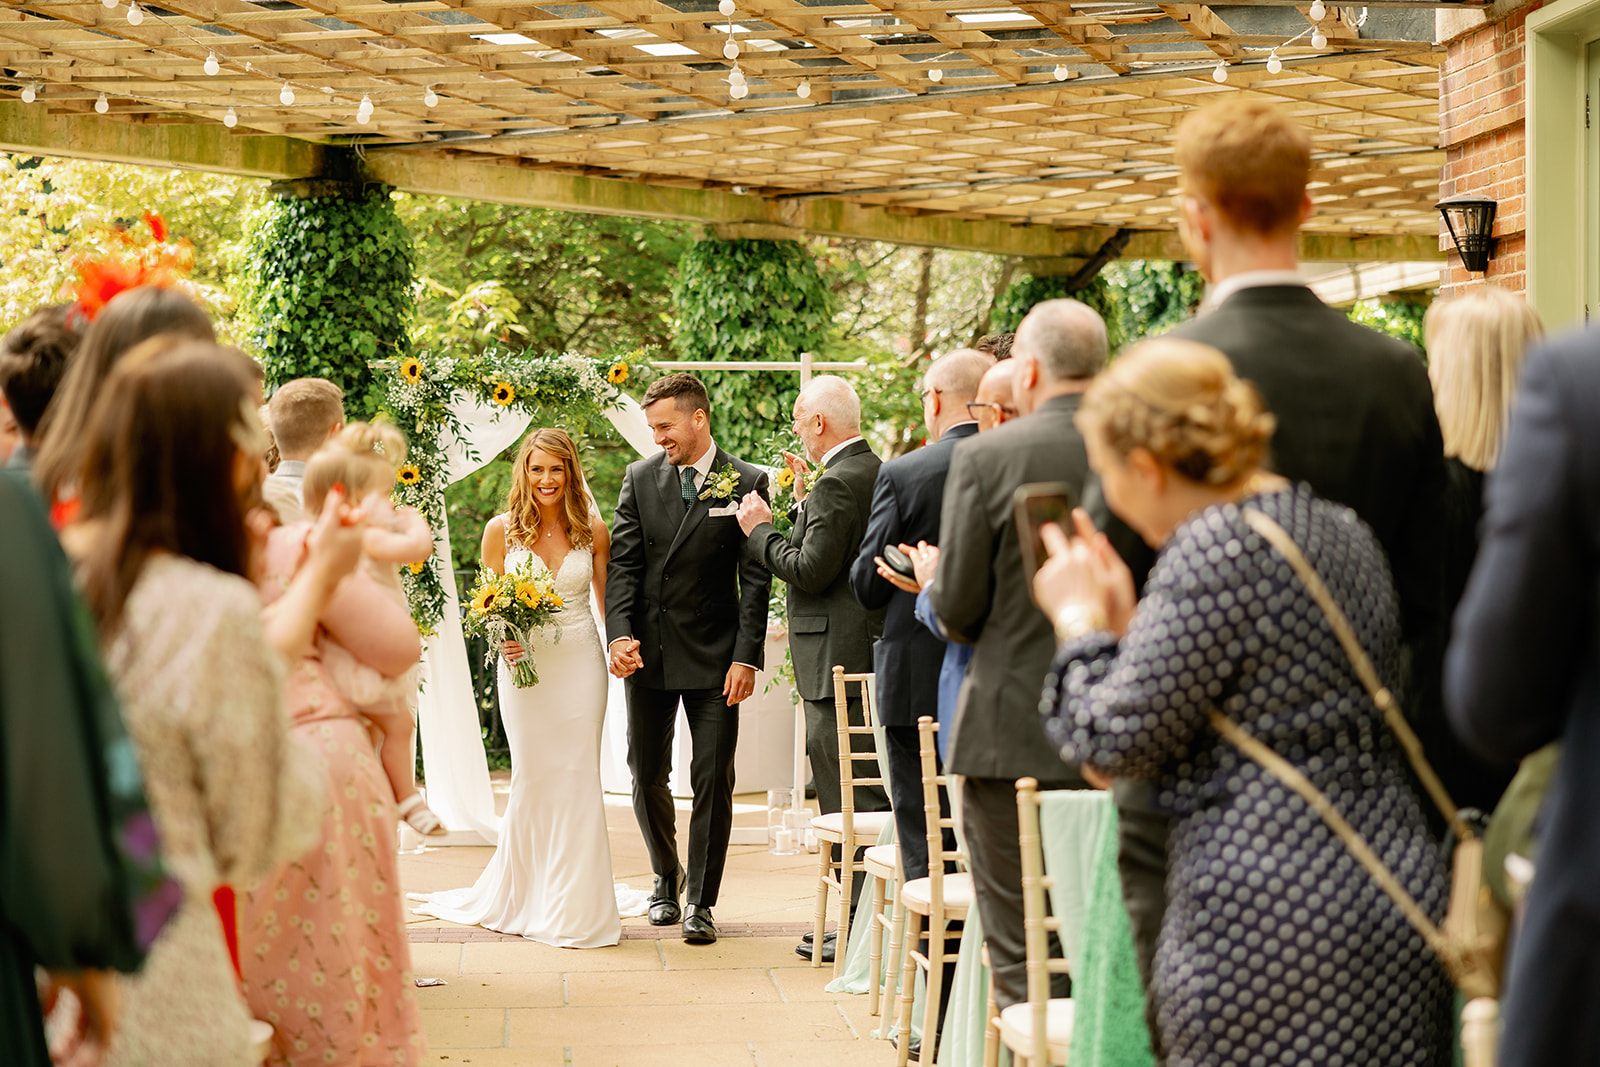 An Outdoor Wedding Ceremony in Harrogate 